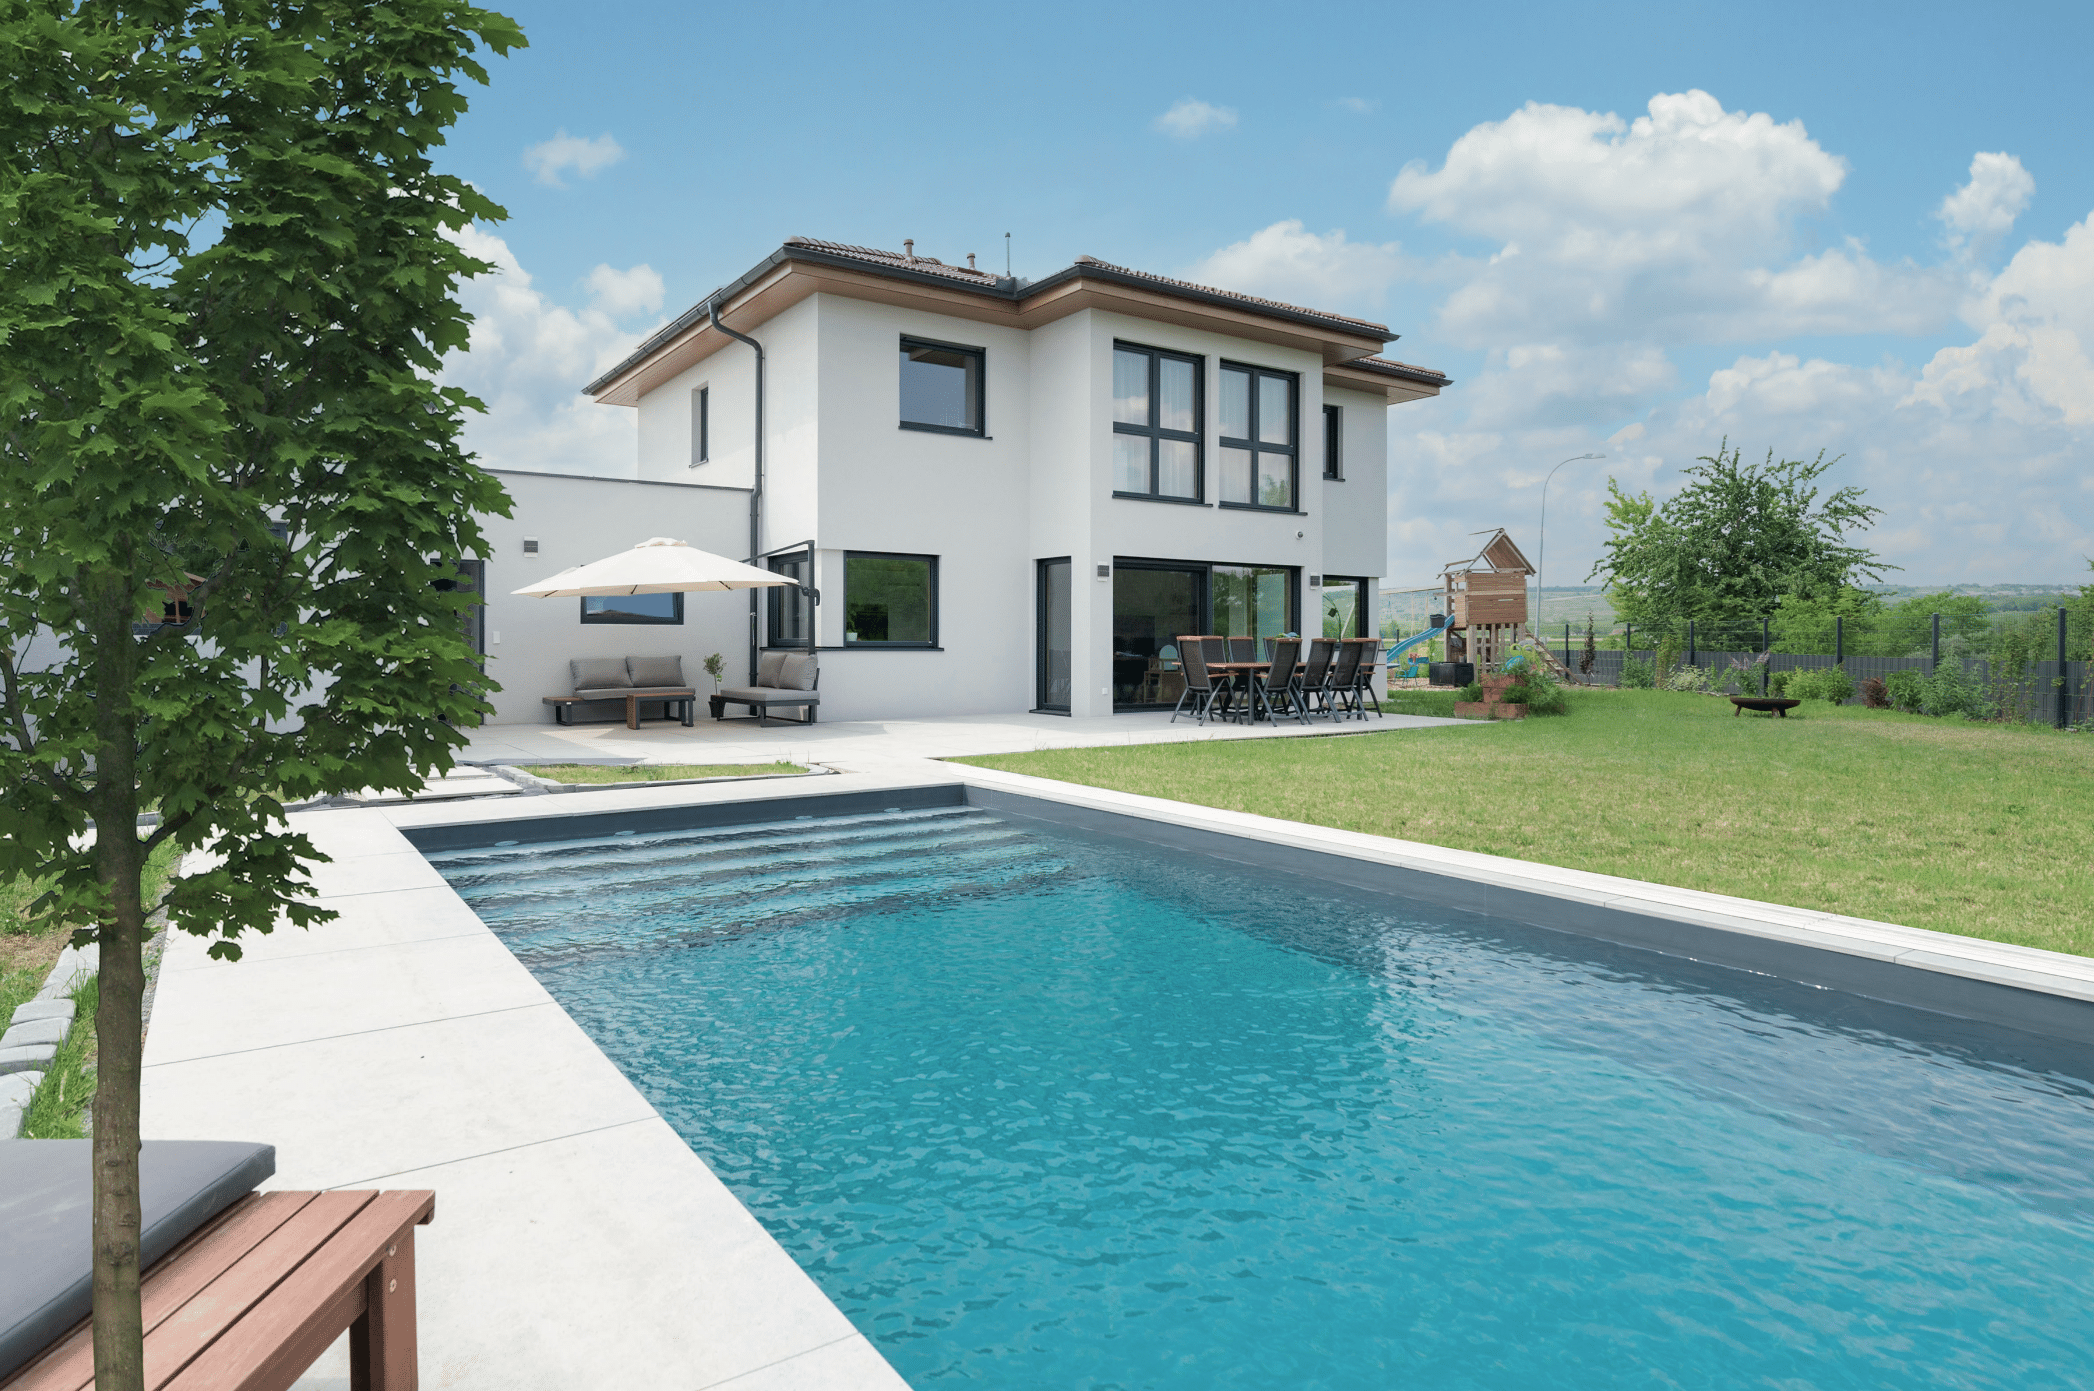 Hartl Haus zeigt ein weisses Einfamilienhaus mit Wintergarten und Terrasse, einer Gartenlounge mit grauen Sitzbänken und einem rechteckigen Pool.